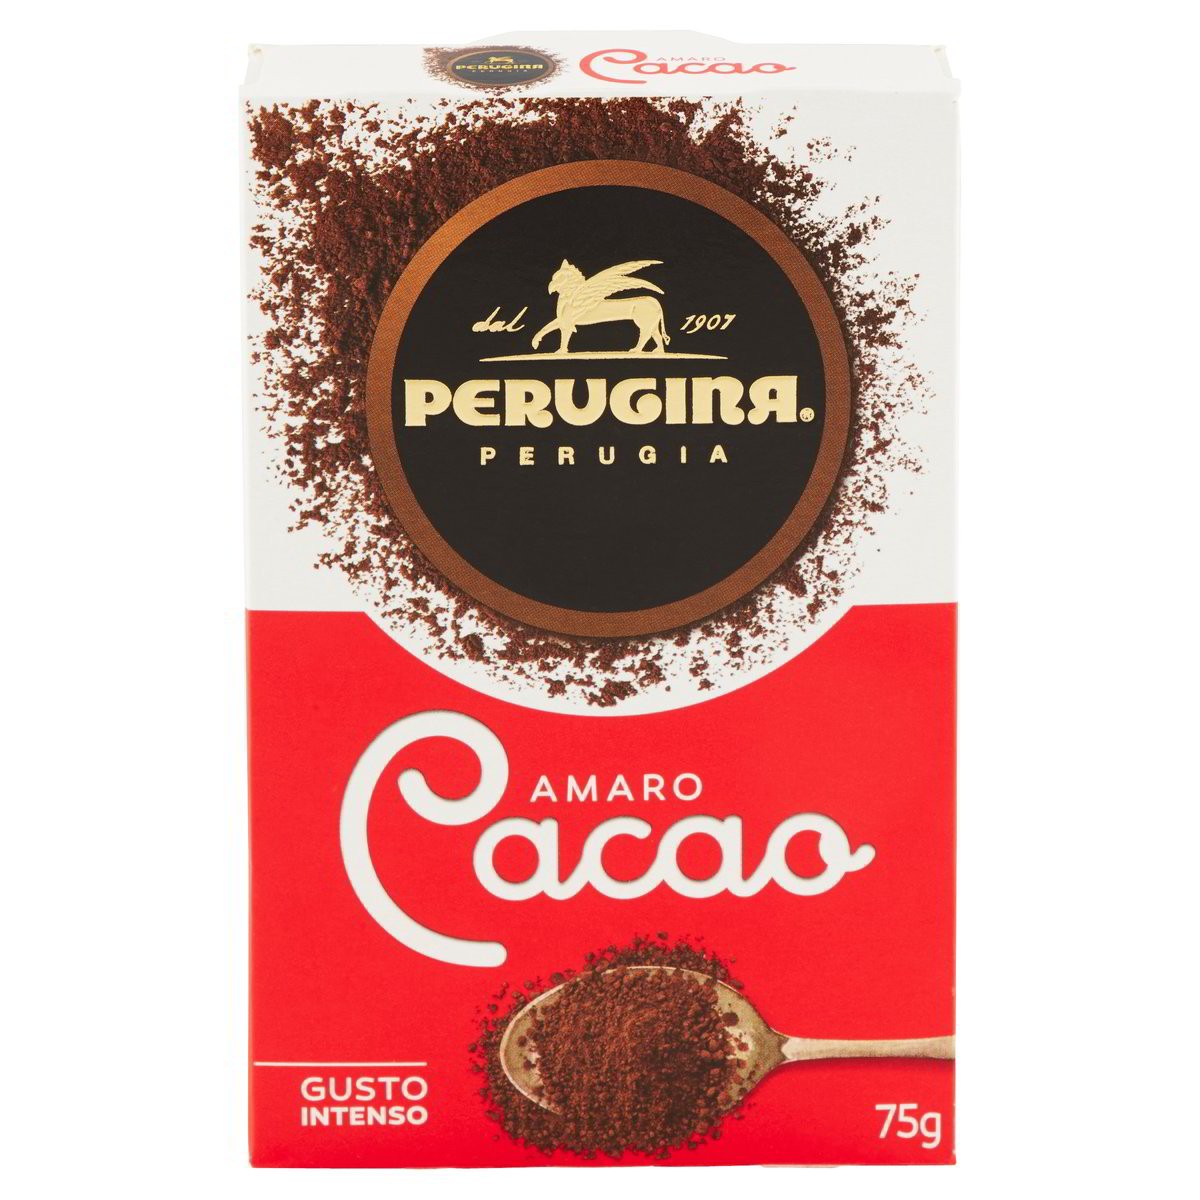 Perugina Cacao amaro